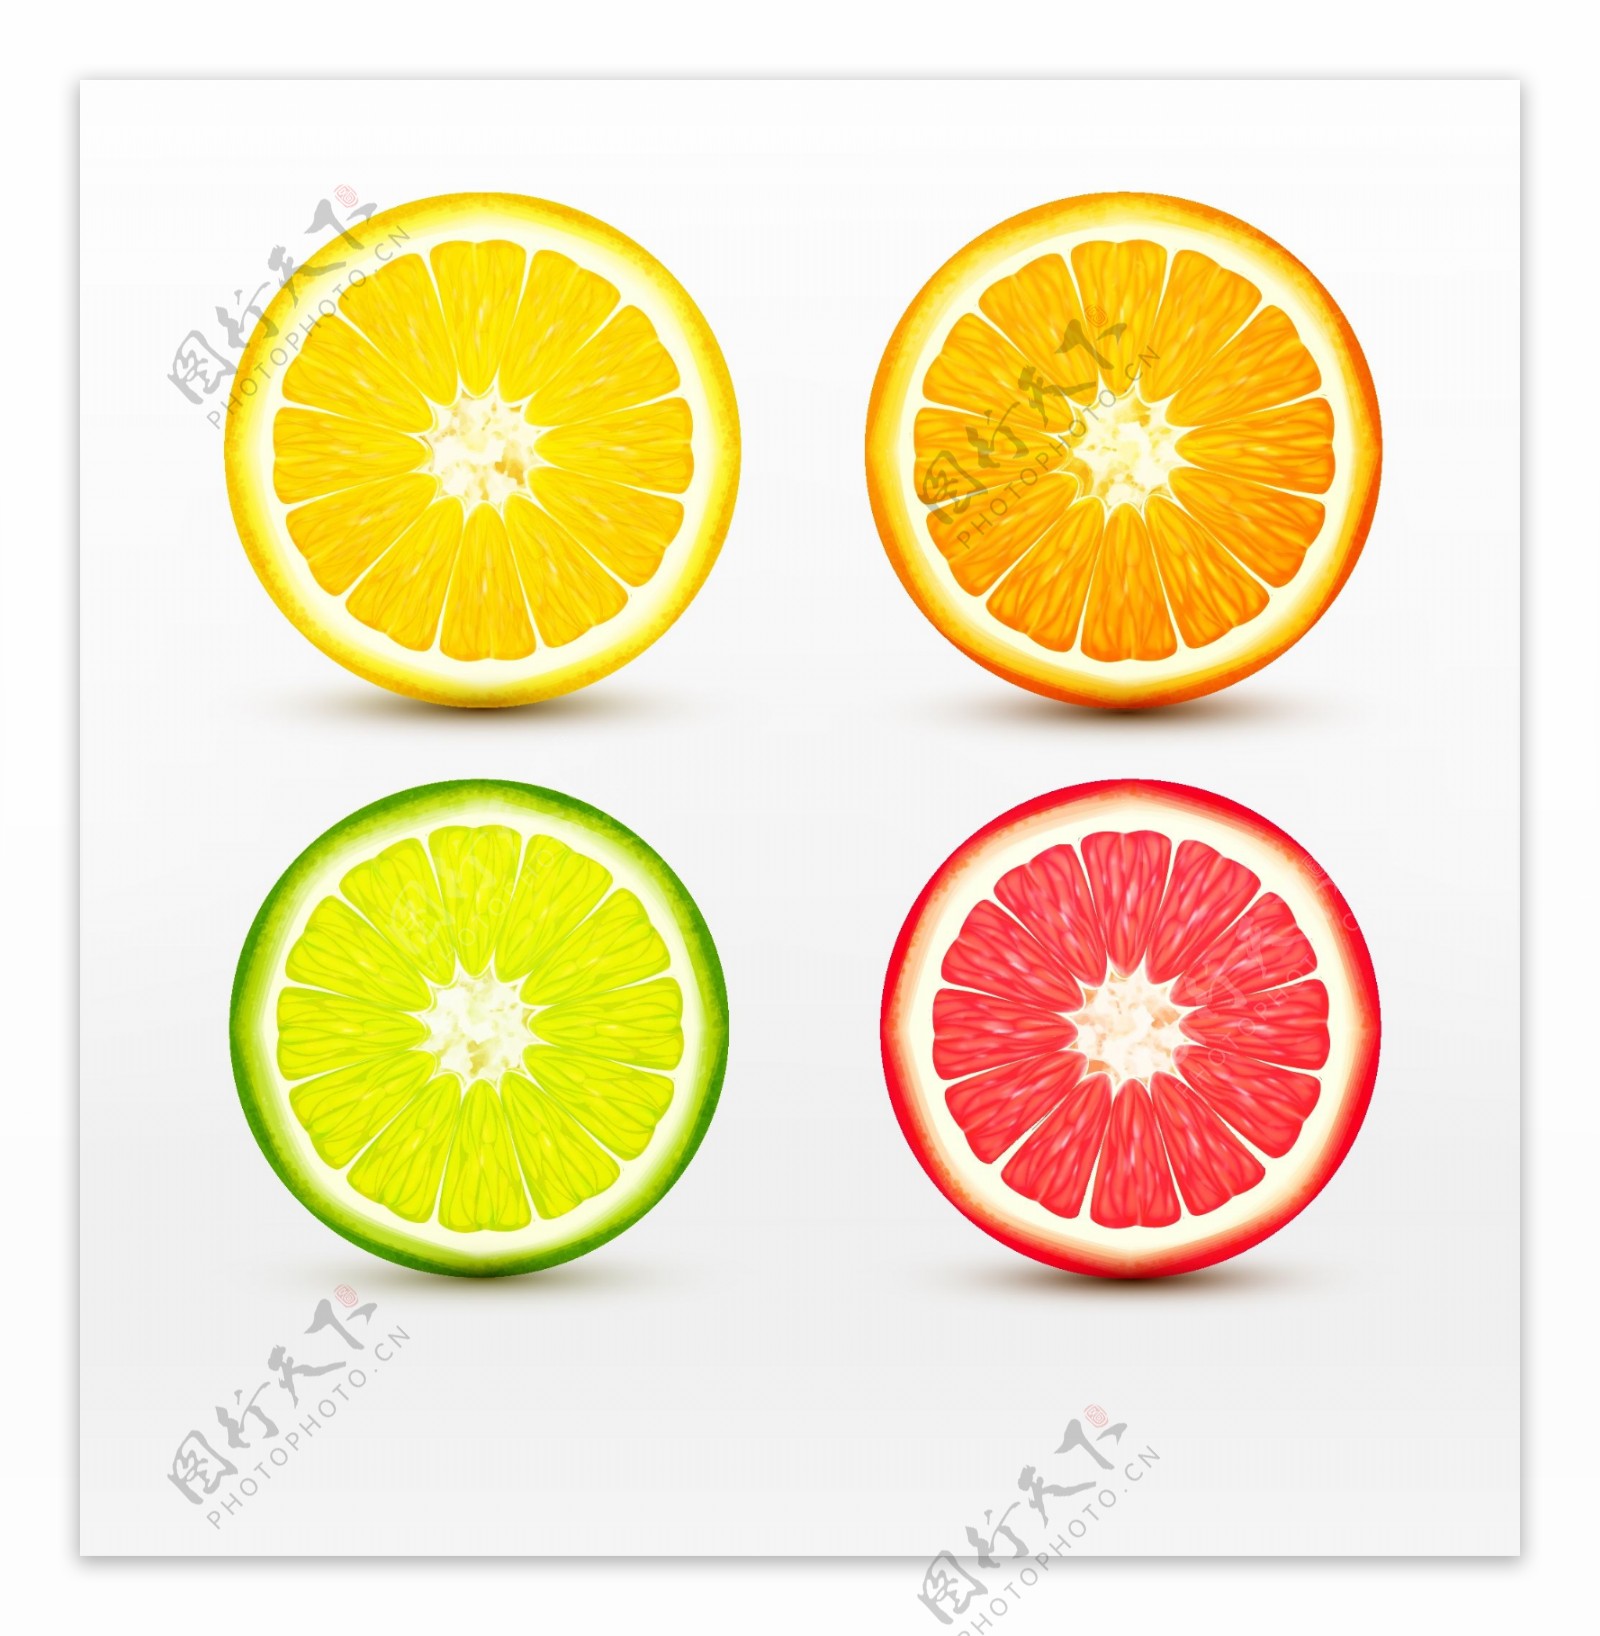 四款不同颜色的柠檬切面矢量素材